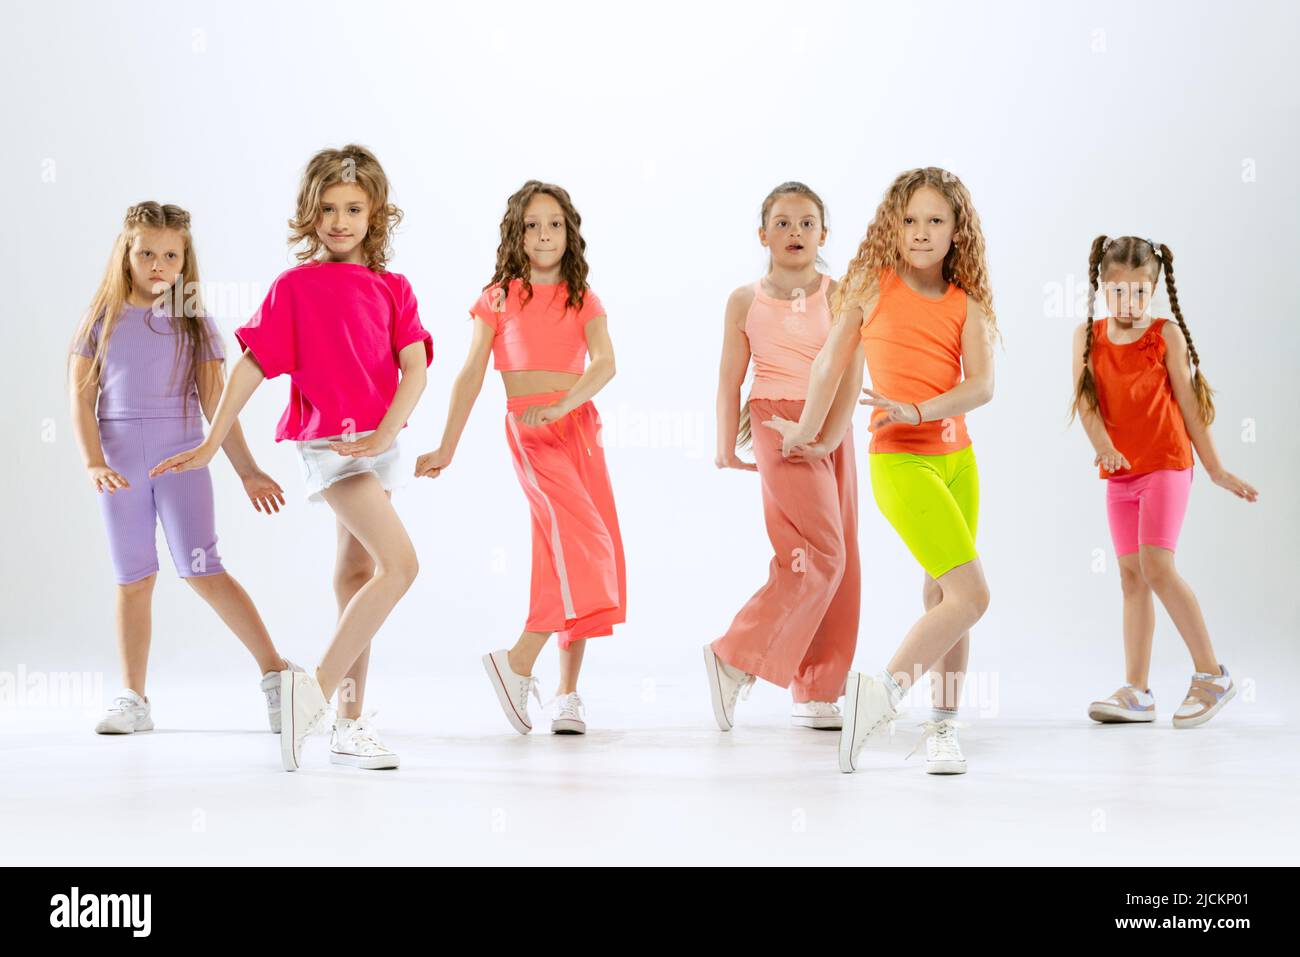 Niñas pequeñas y deportivas, niños con ropa de colores brillantes bailando danza moderna aislada sobre fondo blanco estudio. Concepto de música, moda, arte Fotografía de stock Alamy